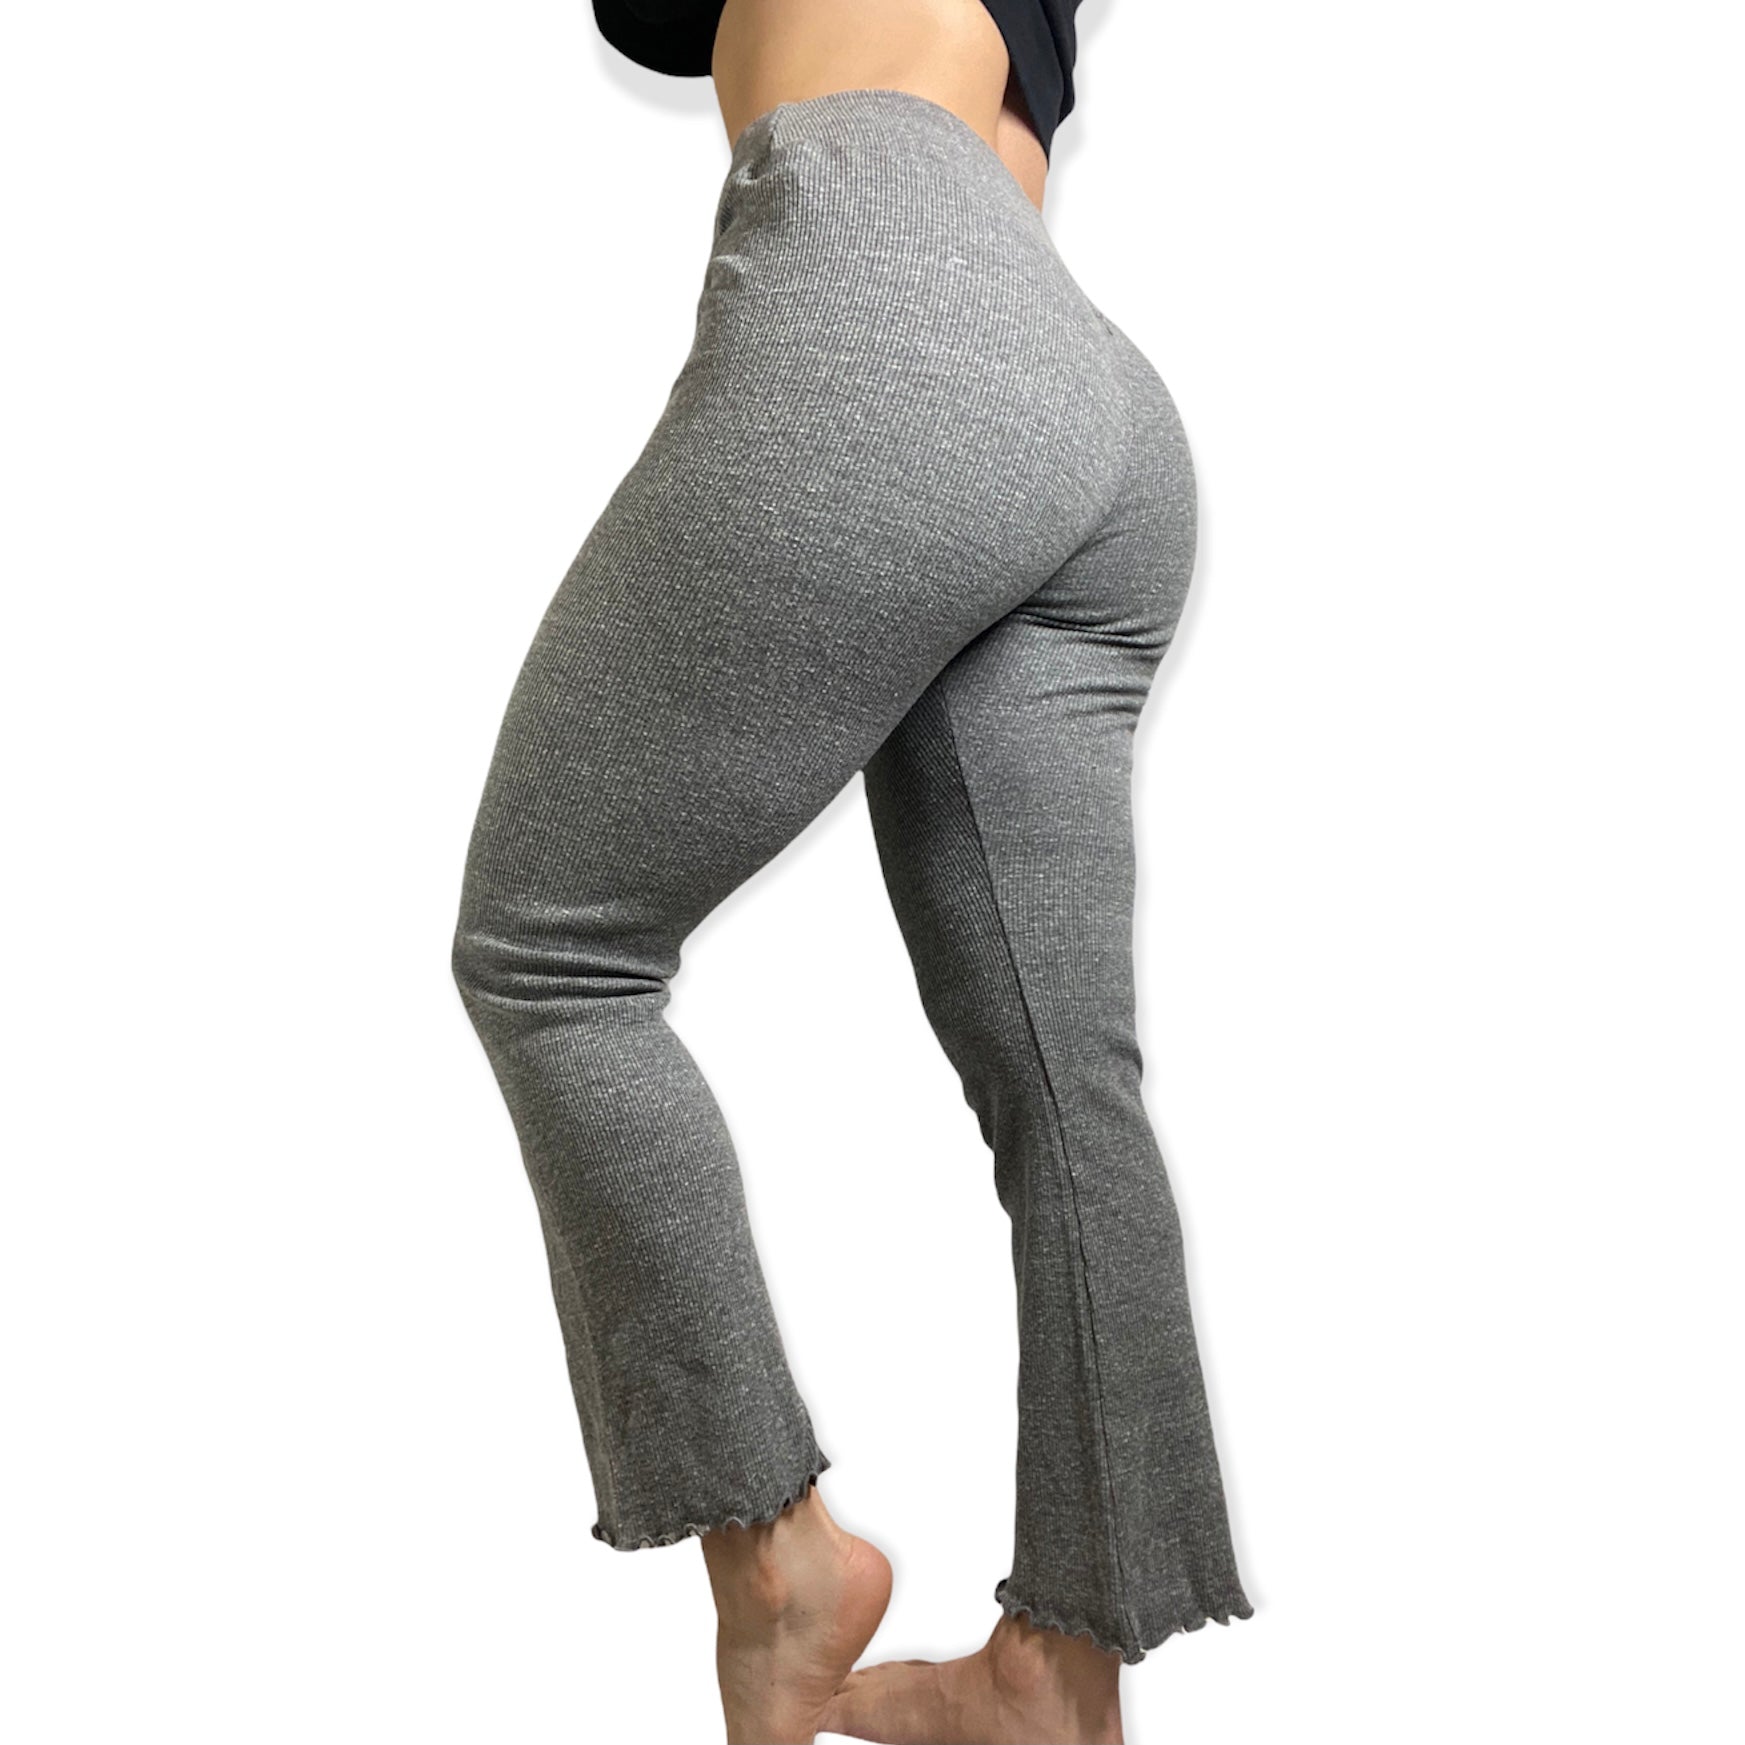 Apana yoga pants  Yoga pants, Pant shopping, Pants